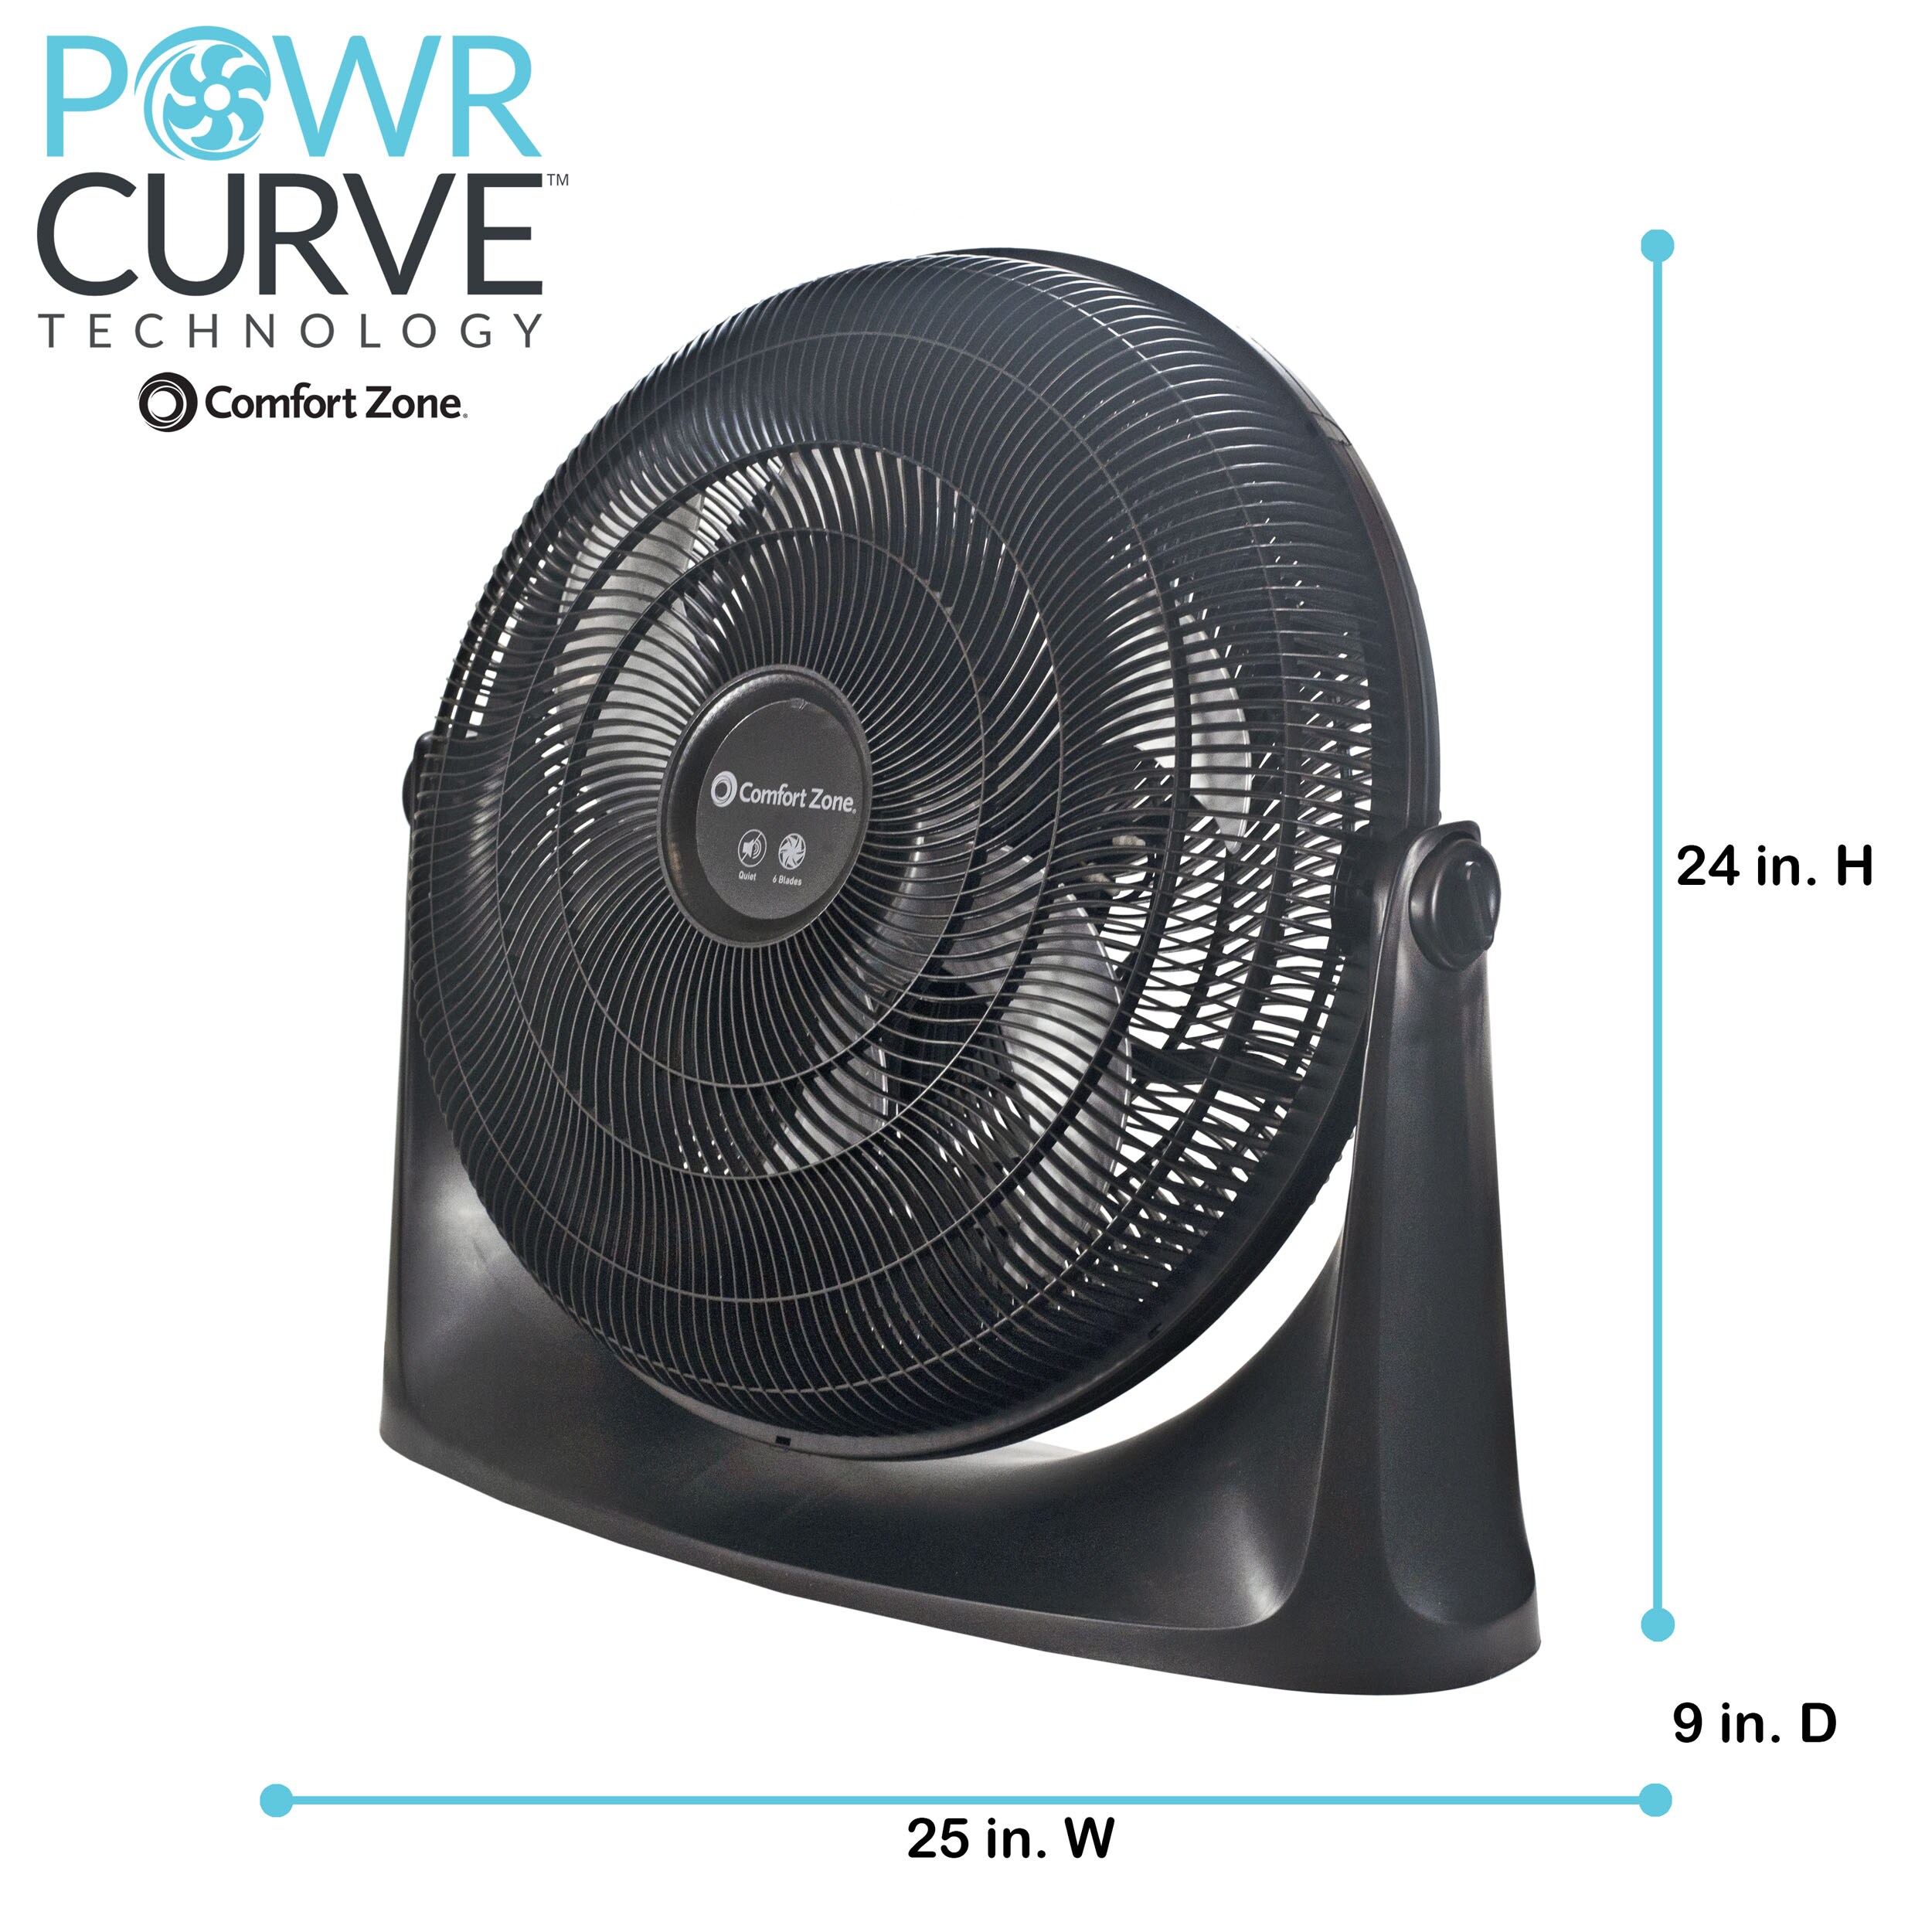 Comfort Zone 18.5-in 3-Speed Indoor Black Floor Fan